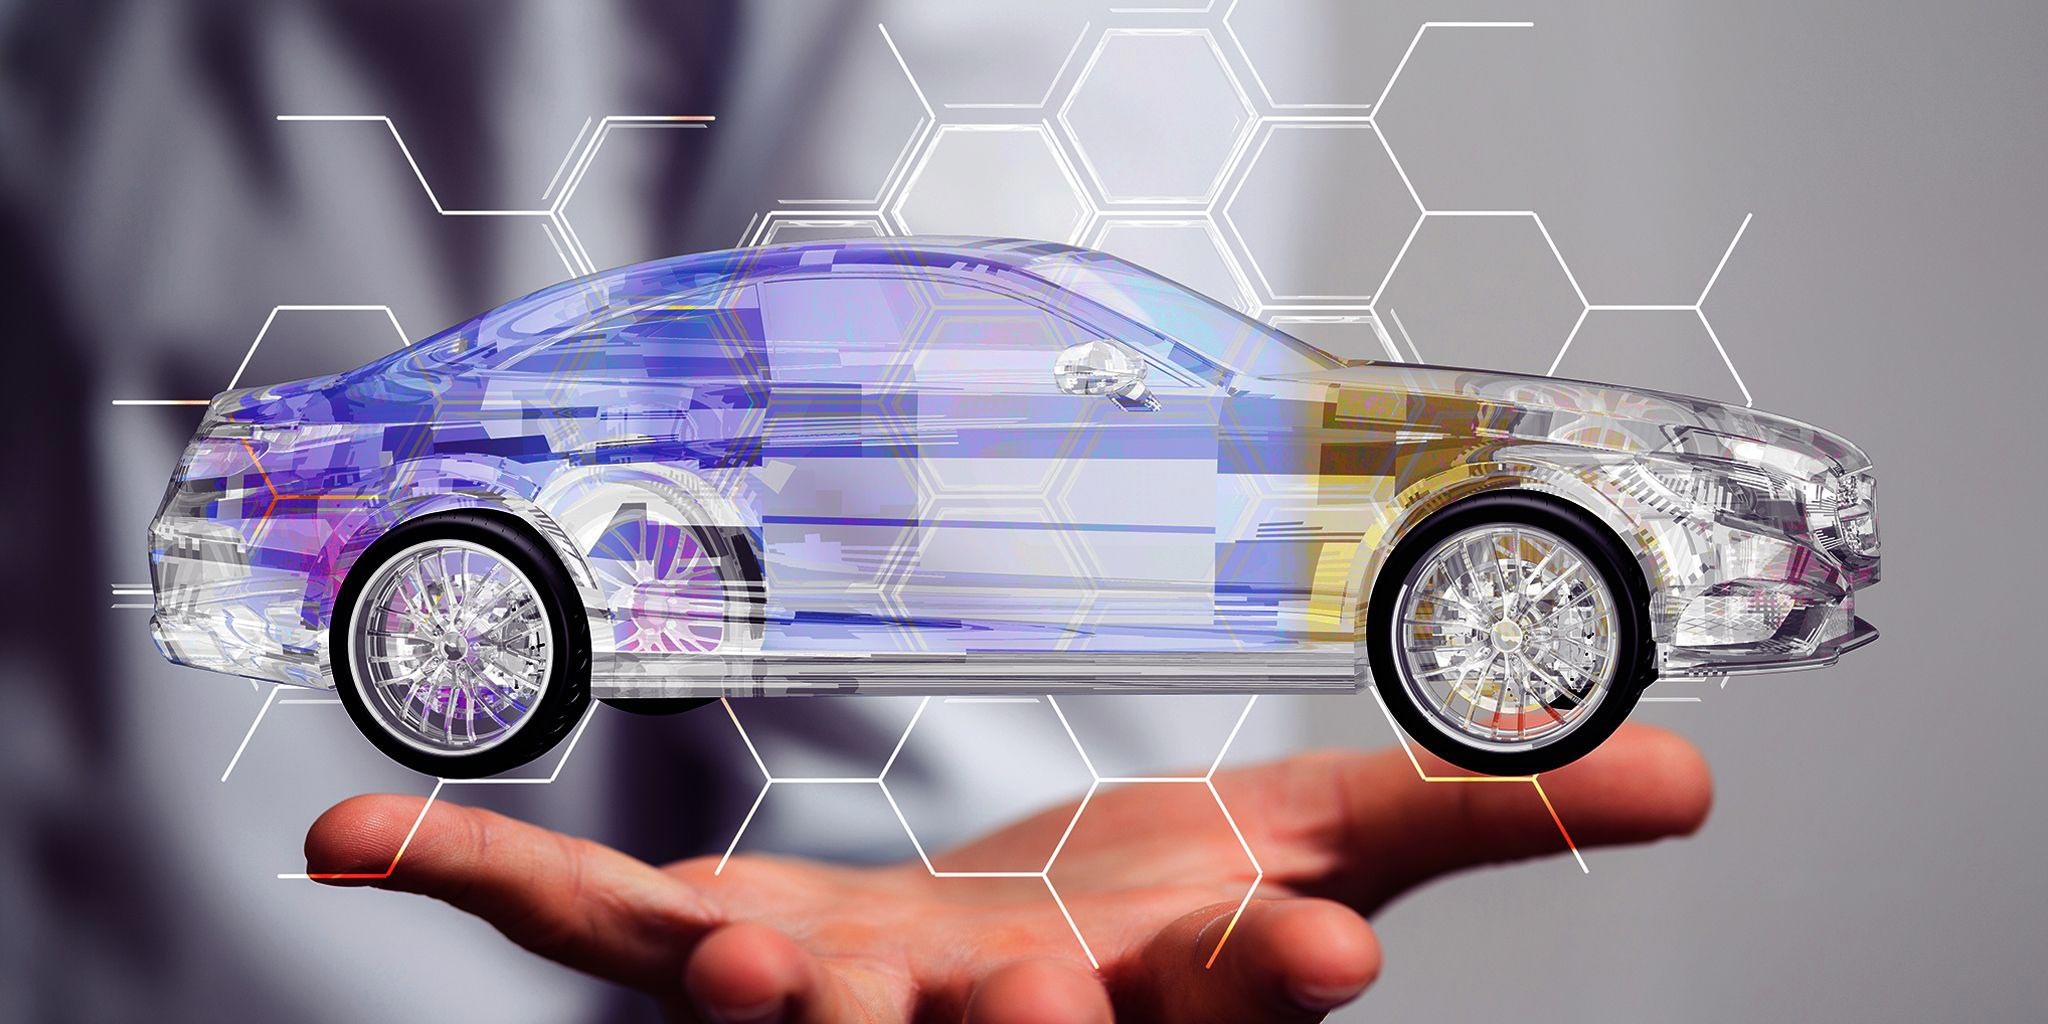 رشد تکنولوژی خودروها در آینده